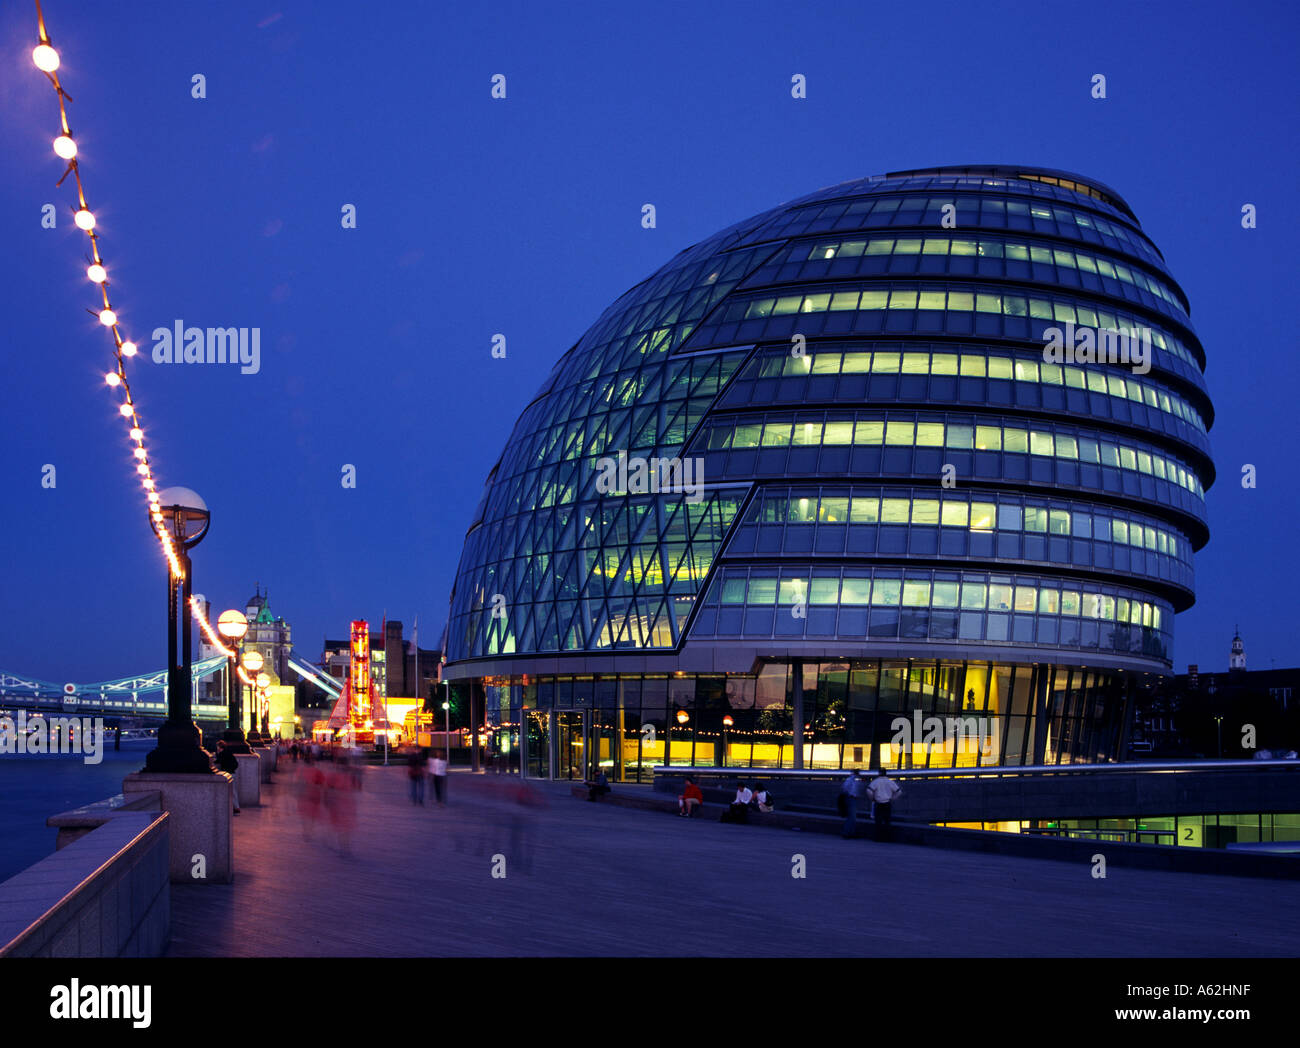 City hall illuminated at night, New City Hall, London, France, Europe Stock Photo